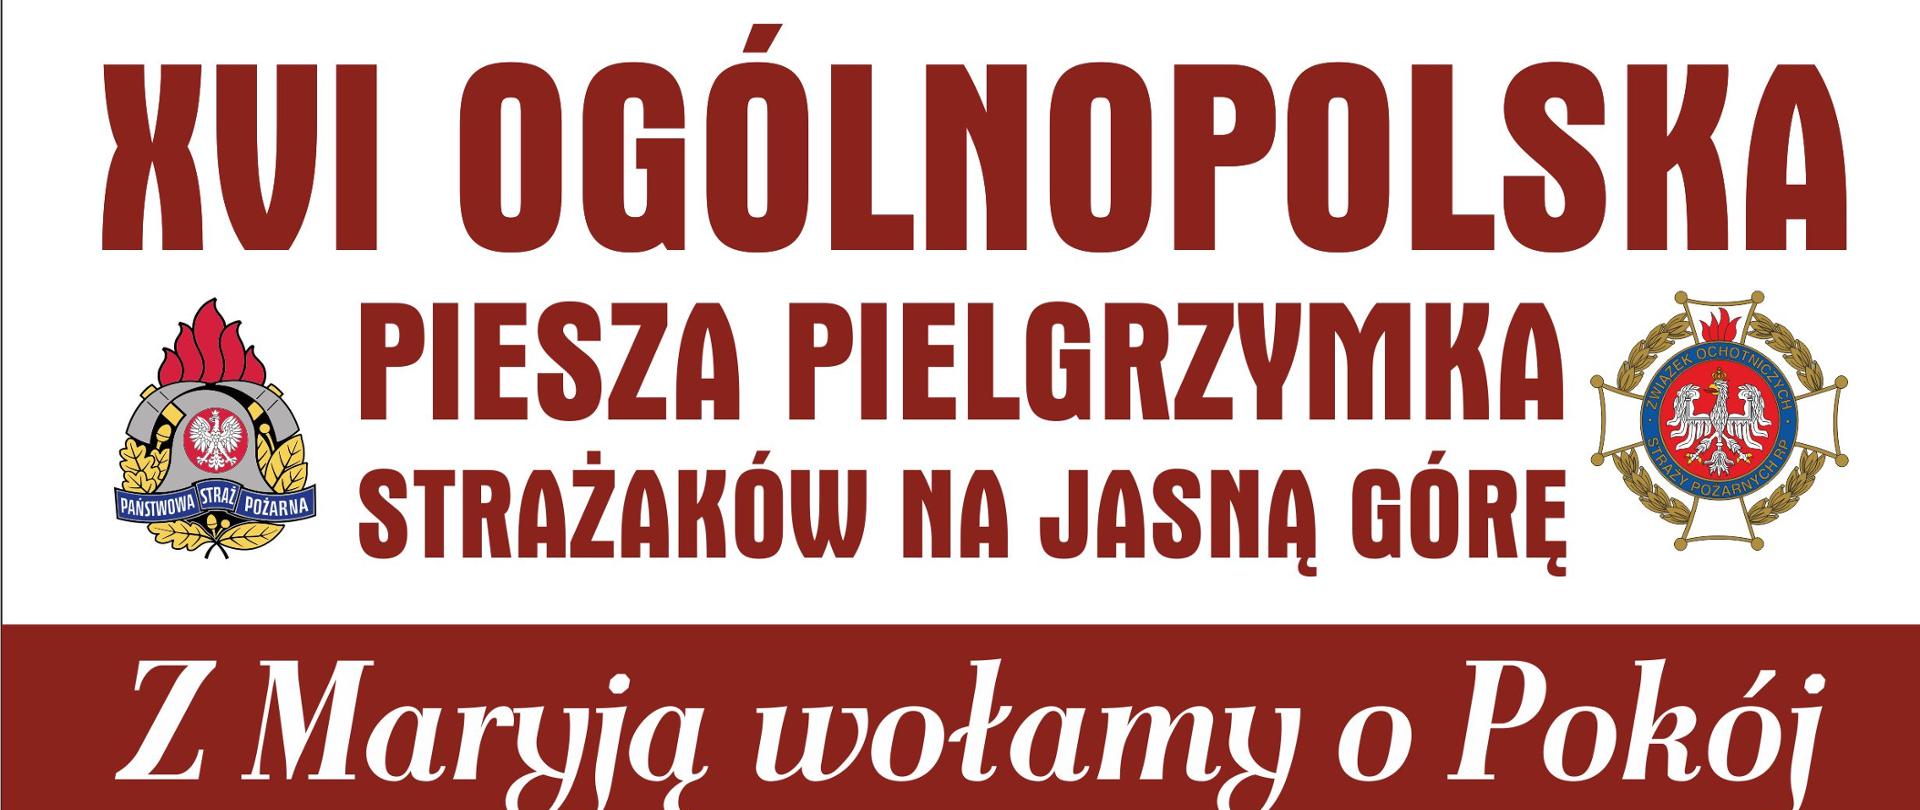 Plakat XVI Ogólnopolskiej Pieszej Pielgrzymki Strażaków na Jasną Górę